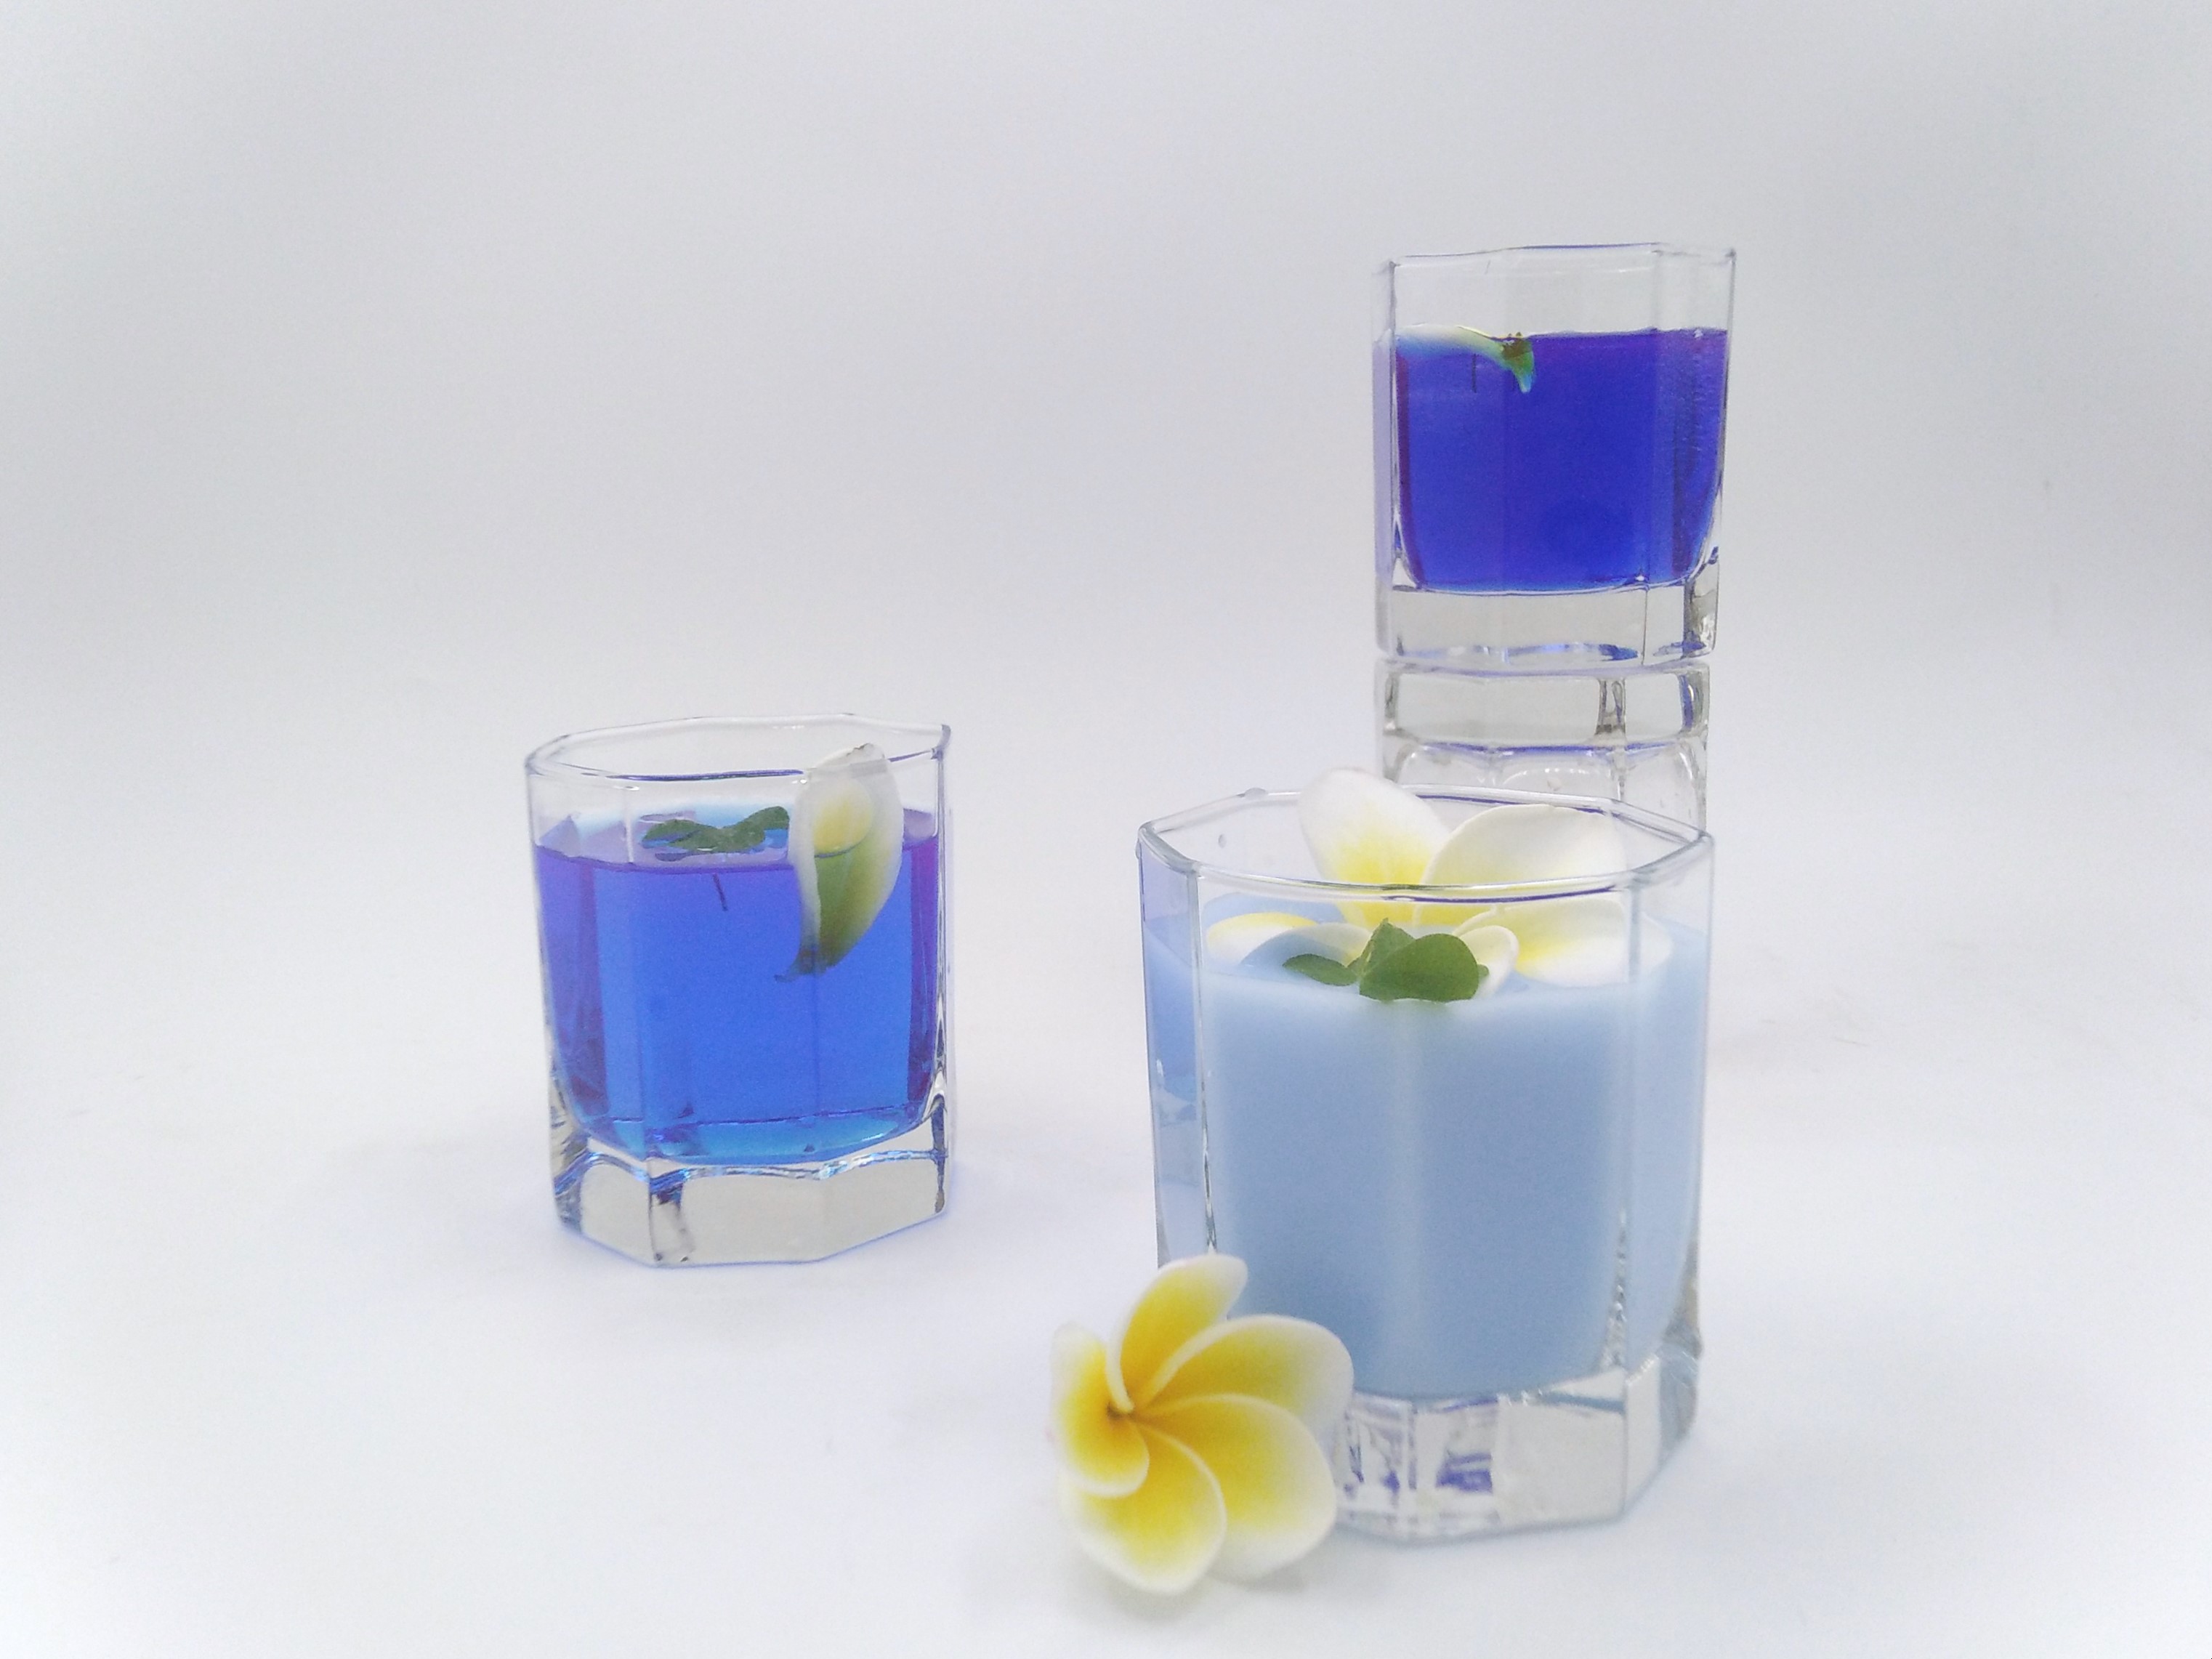 Le bleu des boissons est-il naturel ? – Questions de couleurs